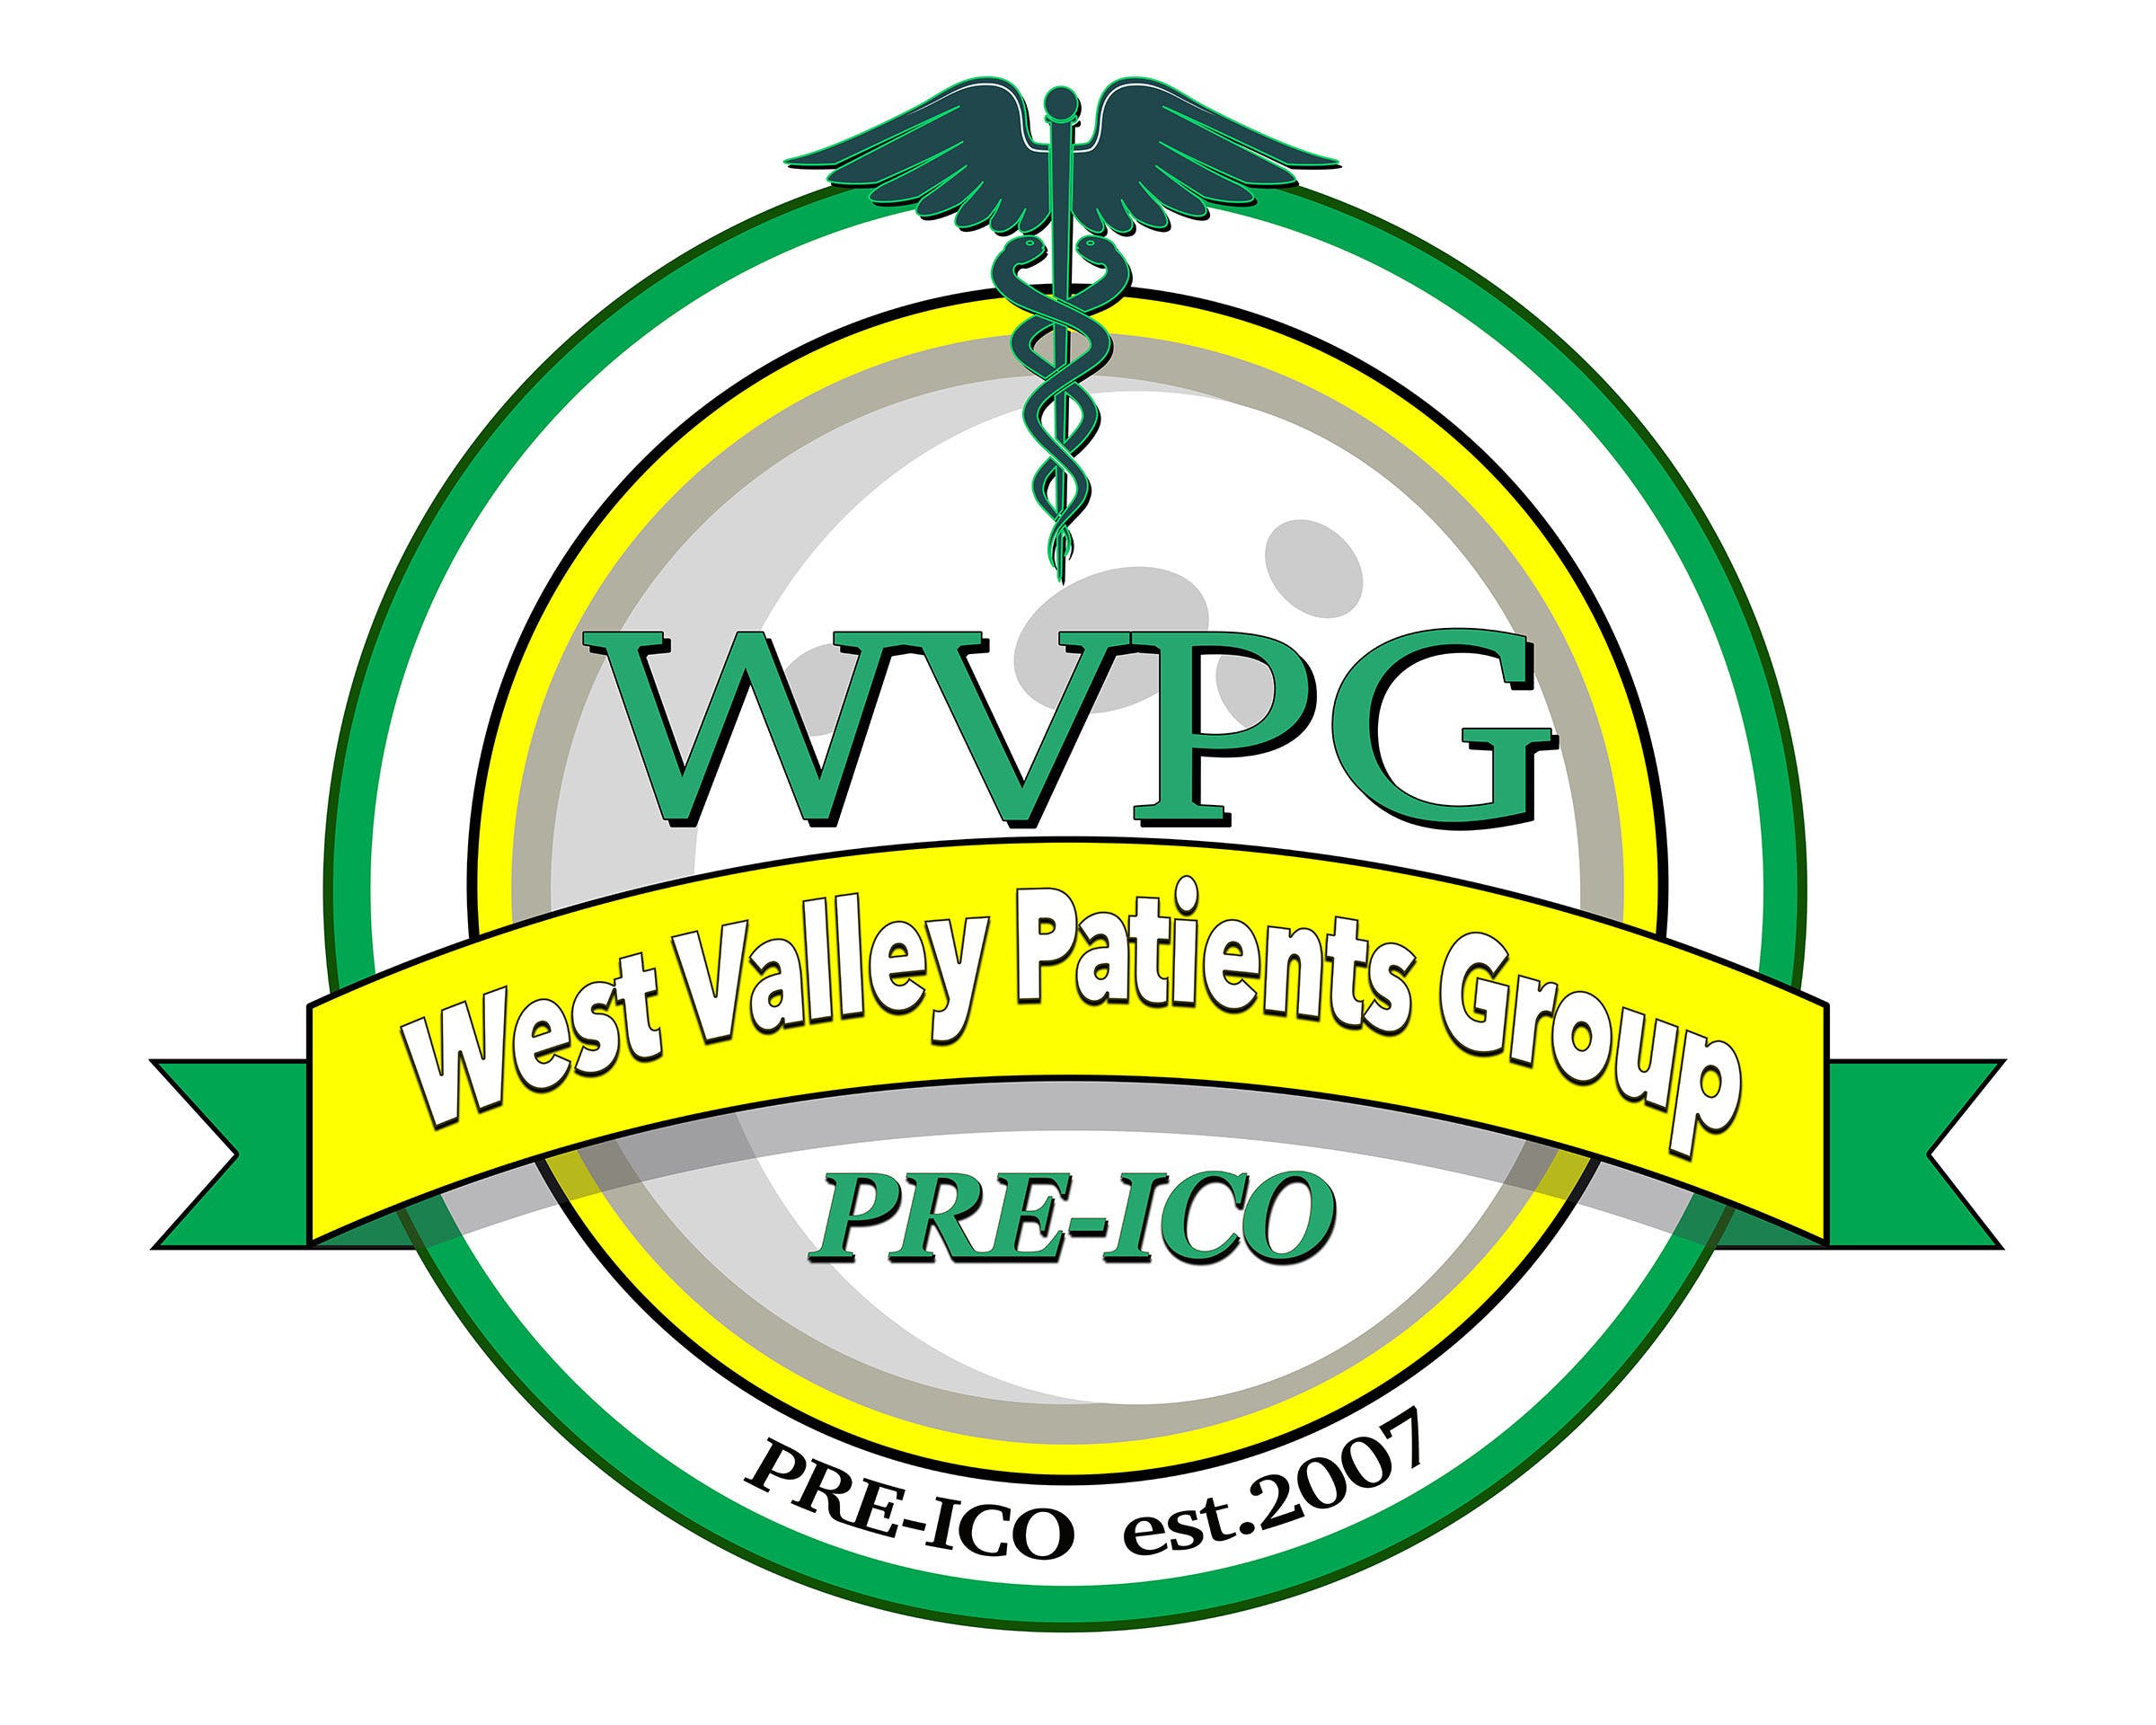 West Valley Patients Center (PRE-ICO) - Medical Marijuana Doctors - Cannabizme.com